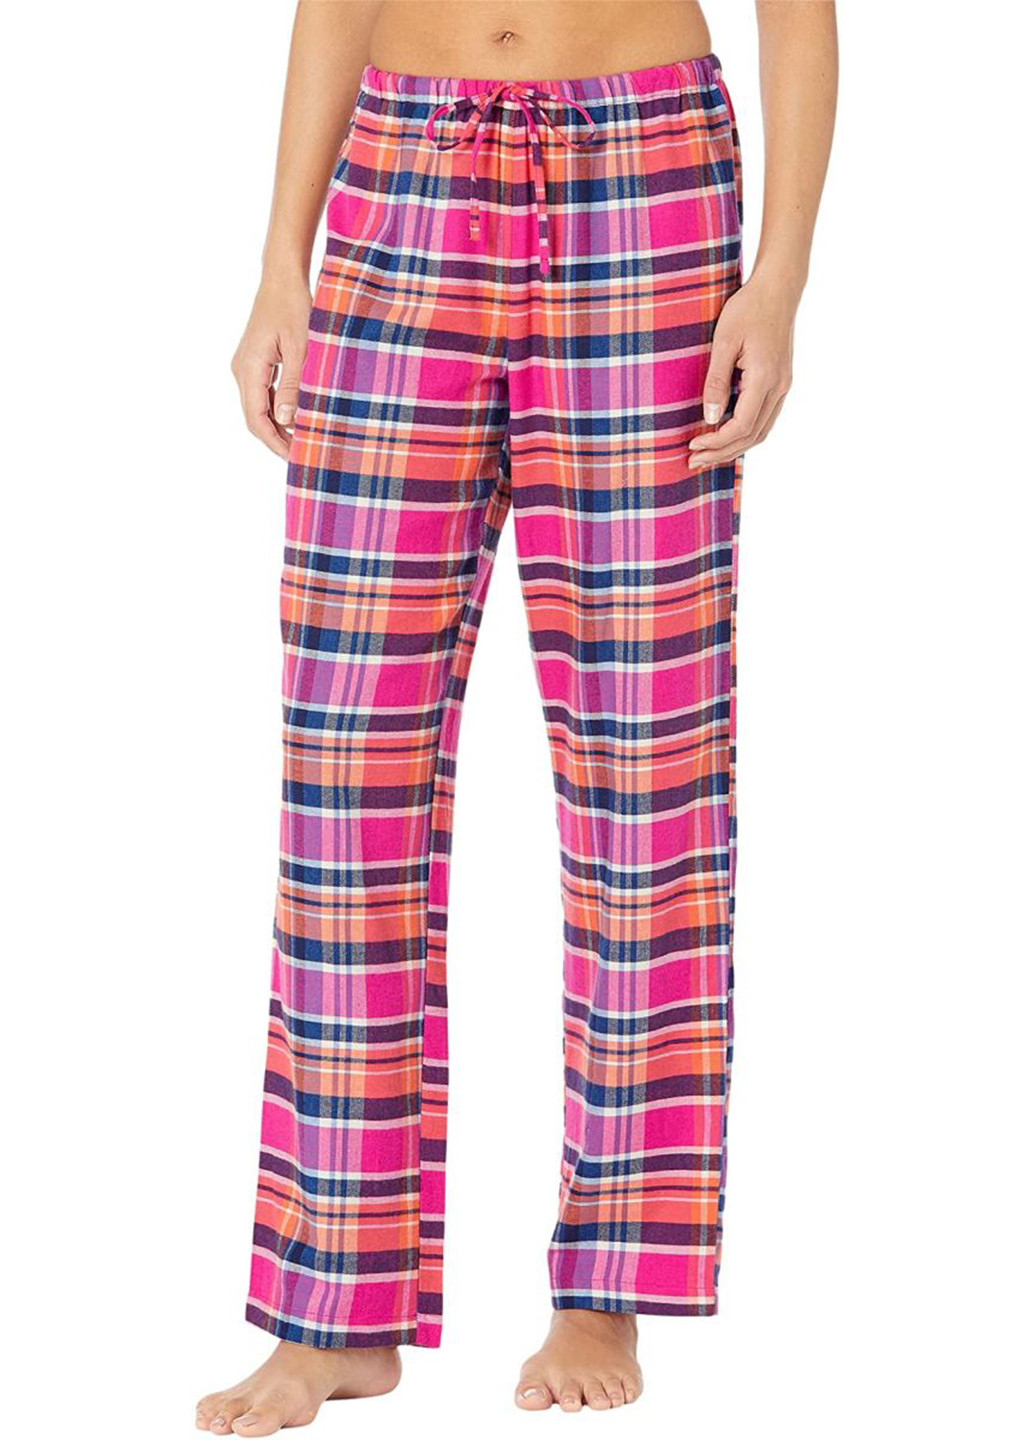 Розовая всесезон пижама (рубашка, брюки) рубашка + брюки Ralph Lauren